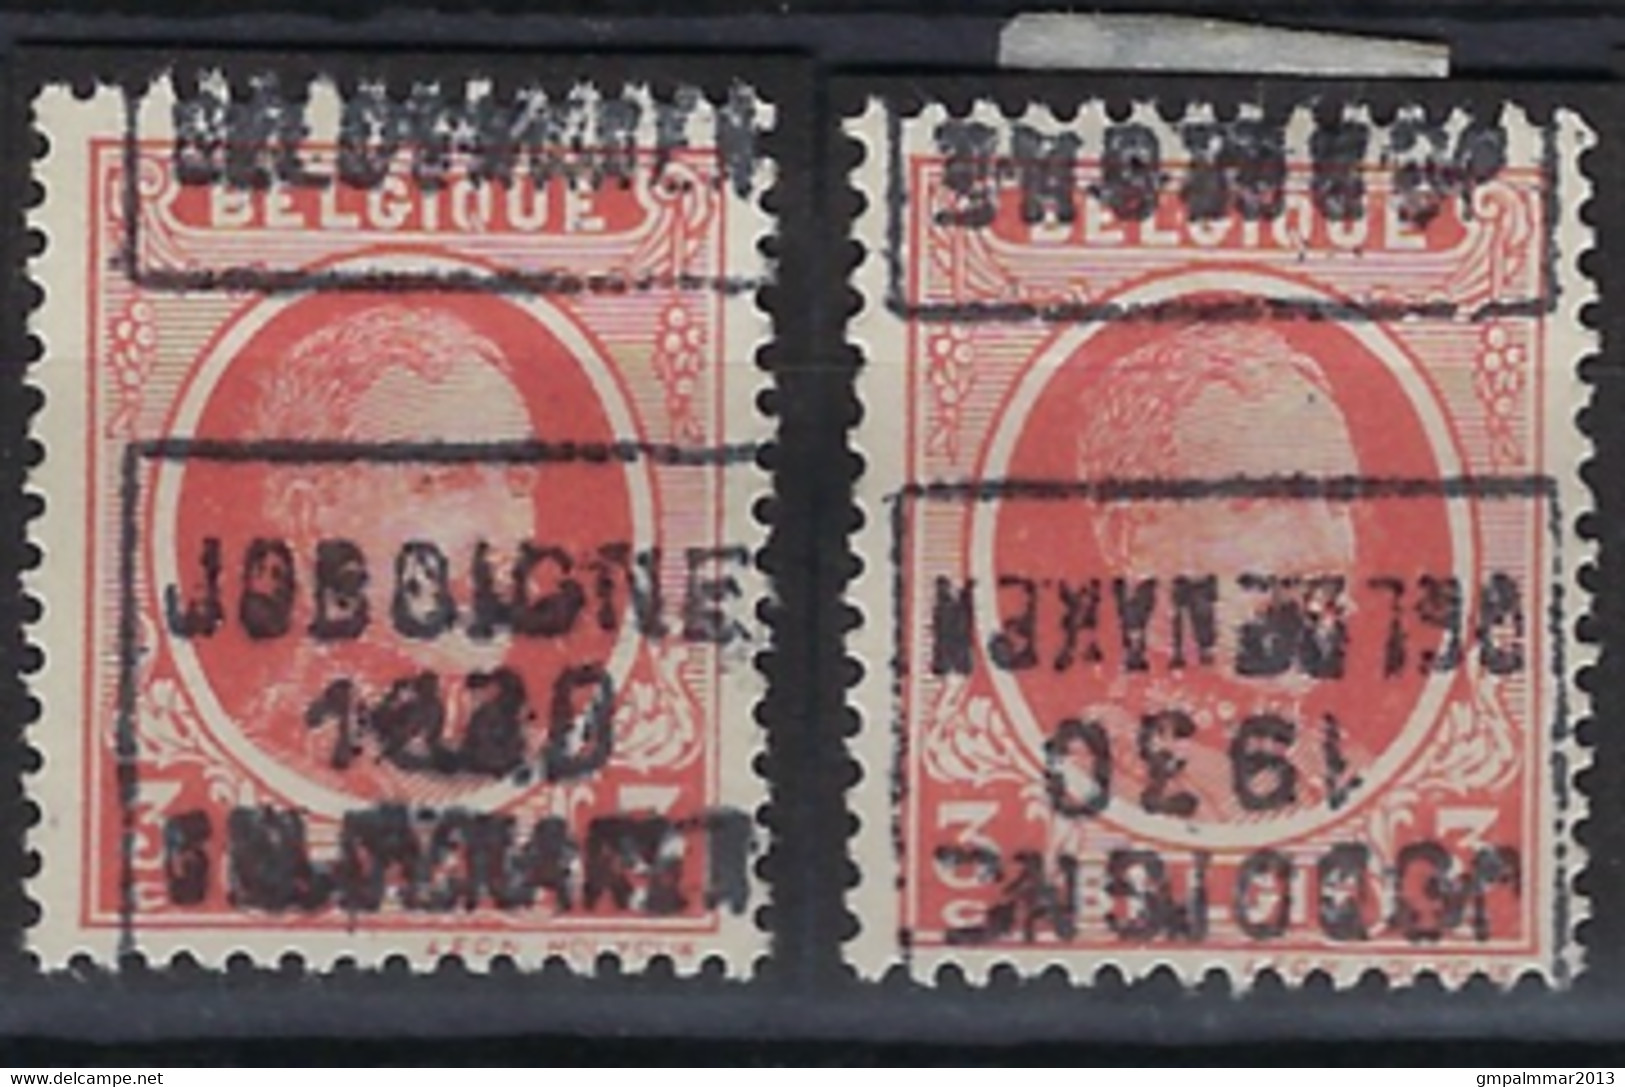 HOUYOUX Nr. 192 Voorafgestempeld Nr. 5430 C + D  JODOIGNE  1930  GELDENAKEN  ; Staat Zie Scan ! - Rollenmarken 1930-..